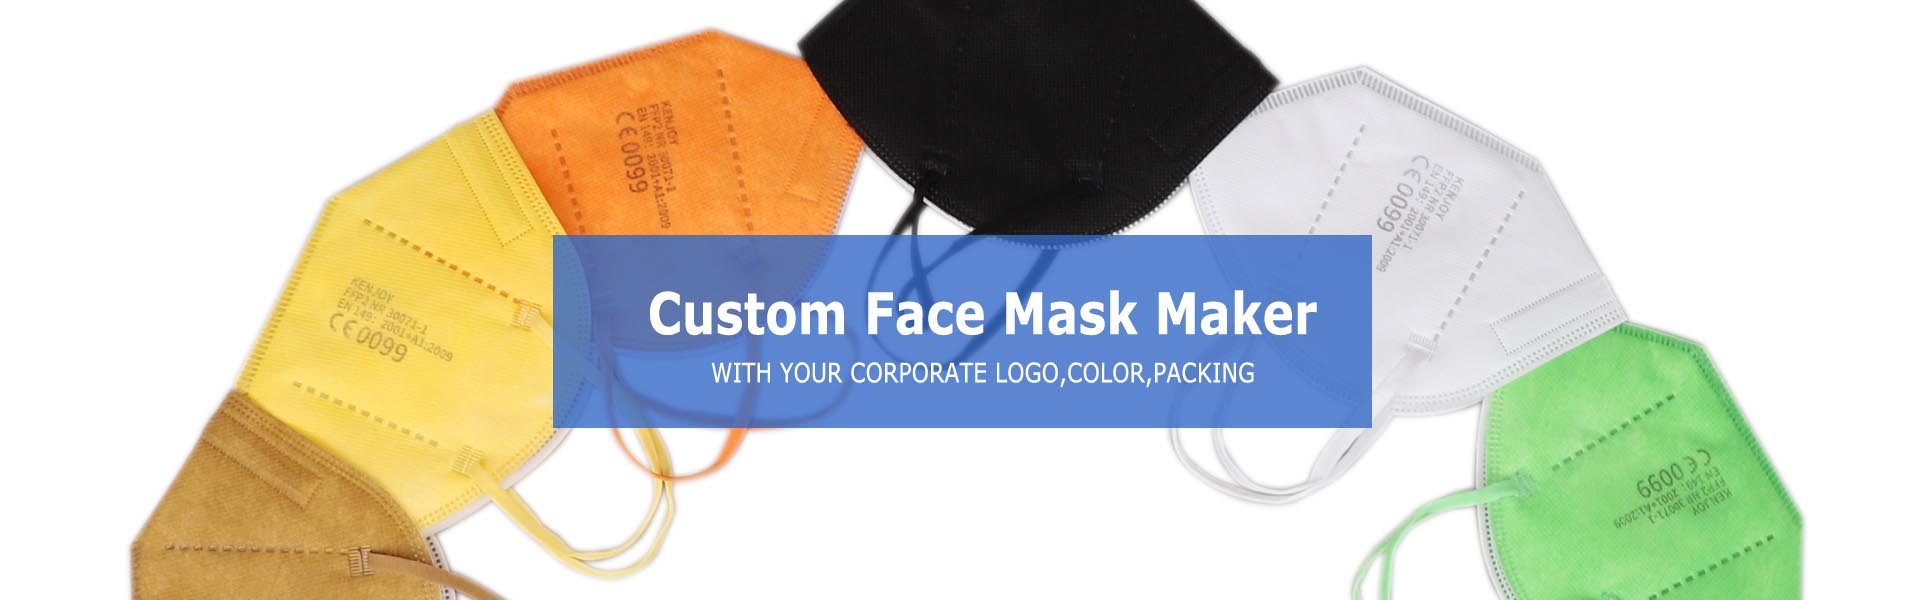 máscaras faciais personalizadas por atacado